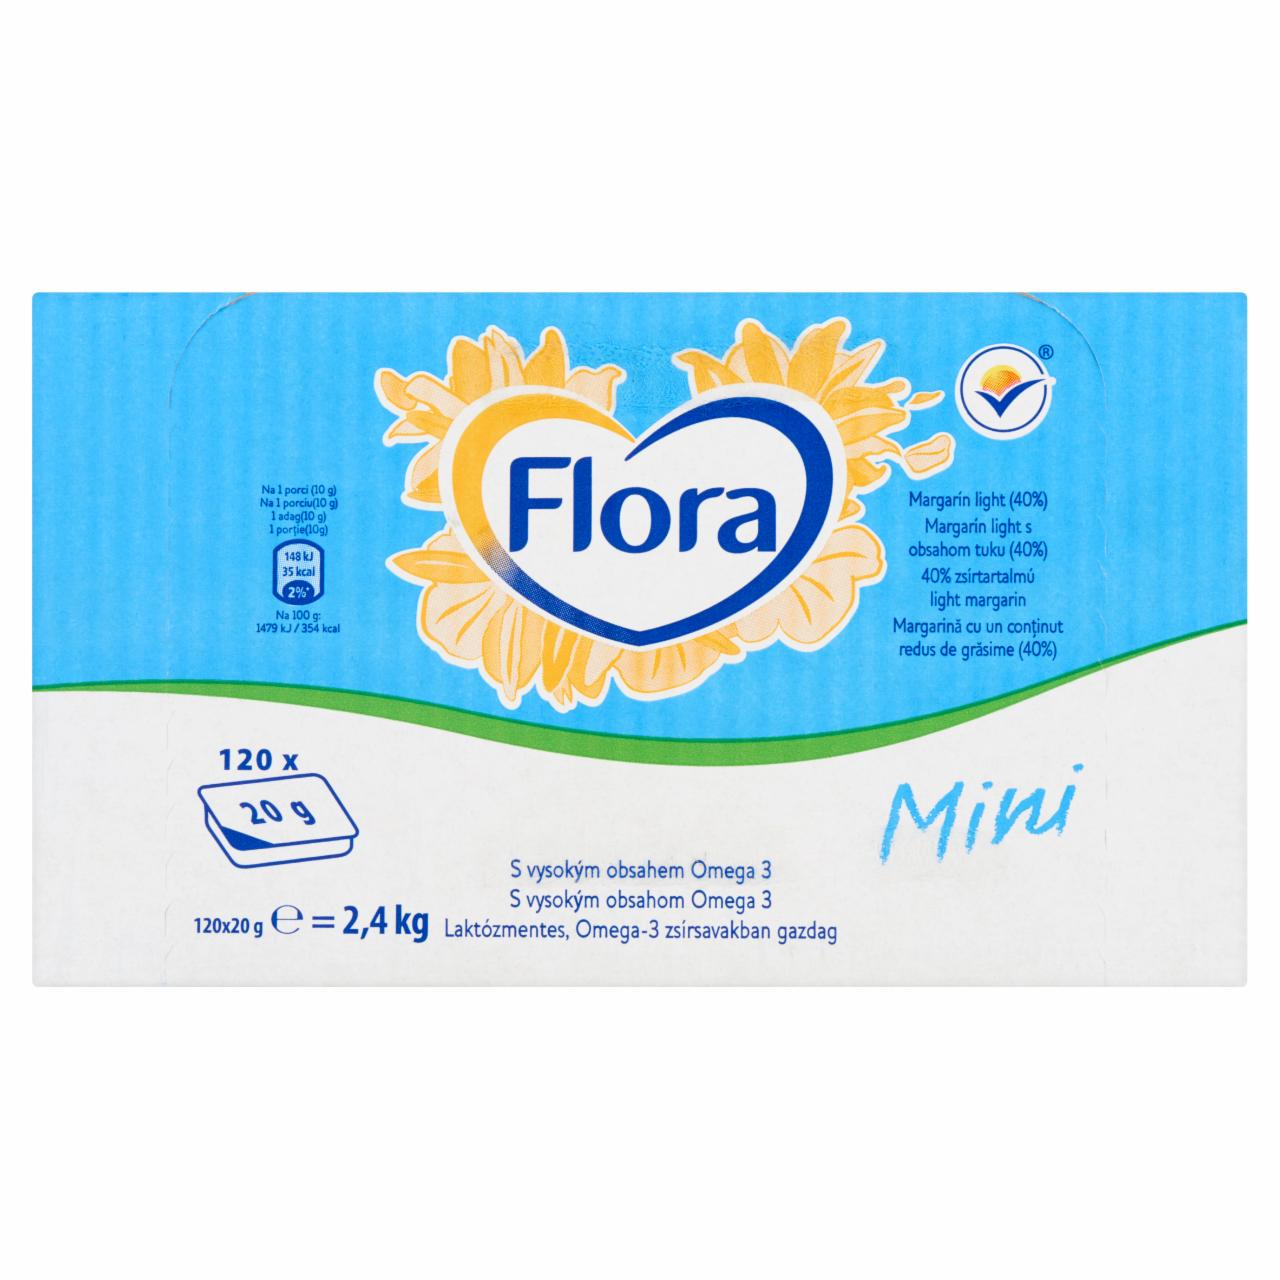 Képek - FLORA mini alacsony zsírtartalmú margarin 120 x 20 g